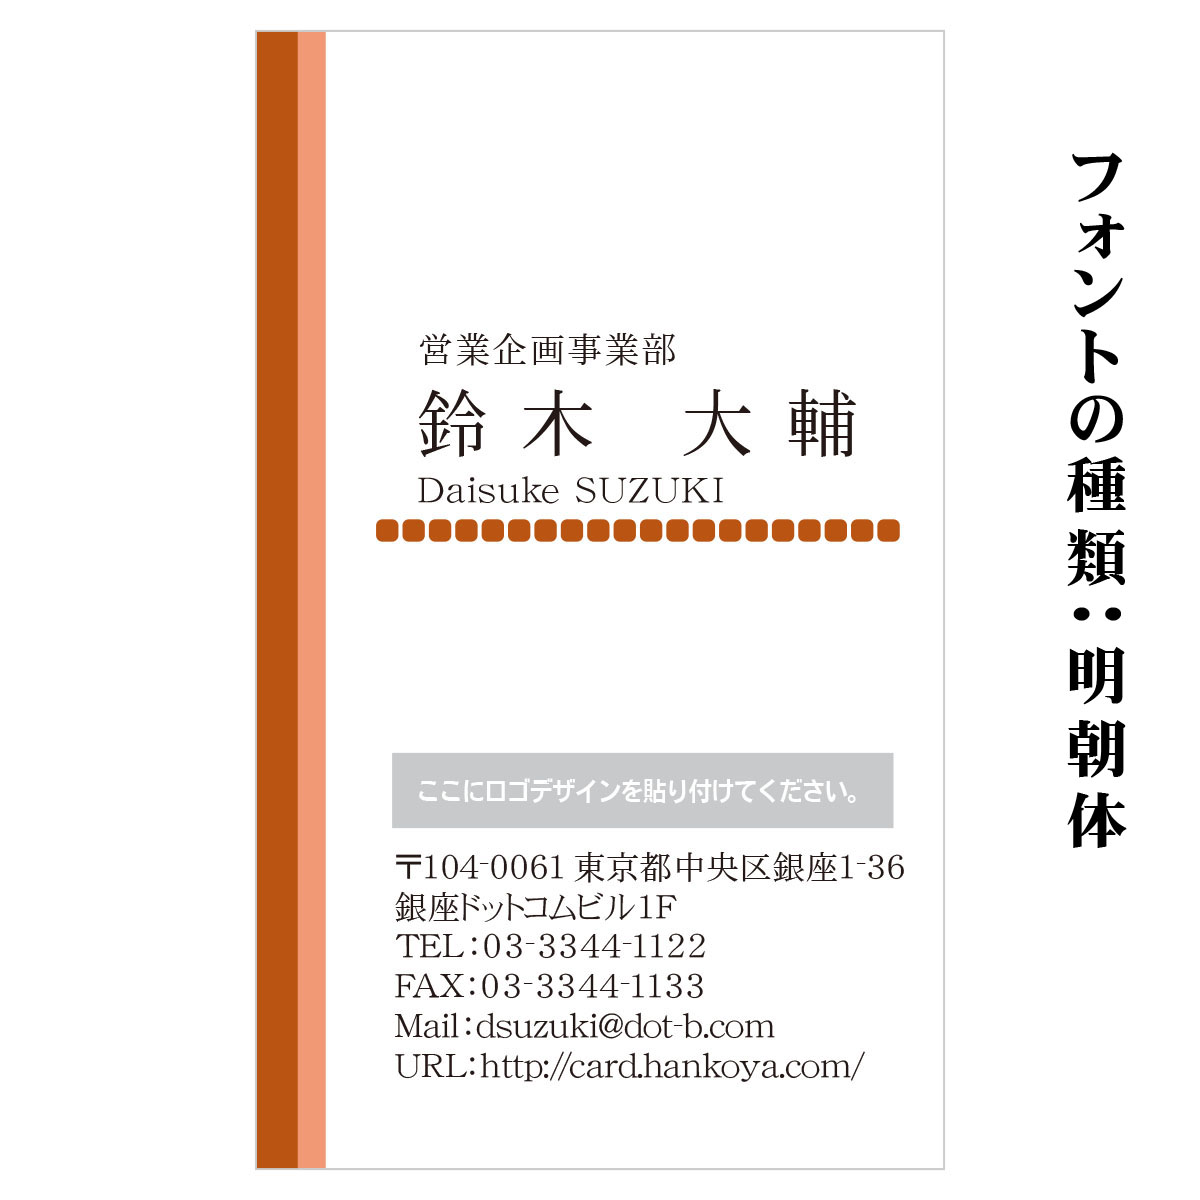 テキスト入稿名刺 タテ向き両面カラー印刷 HR-05 自由入力欄(文字大)